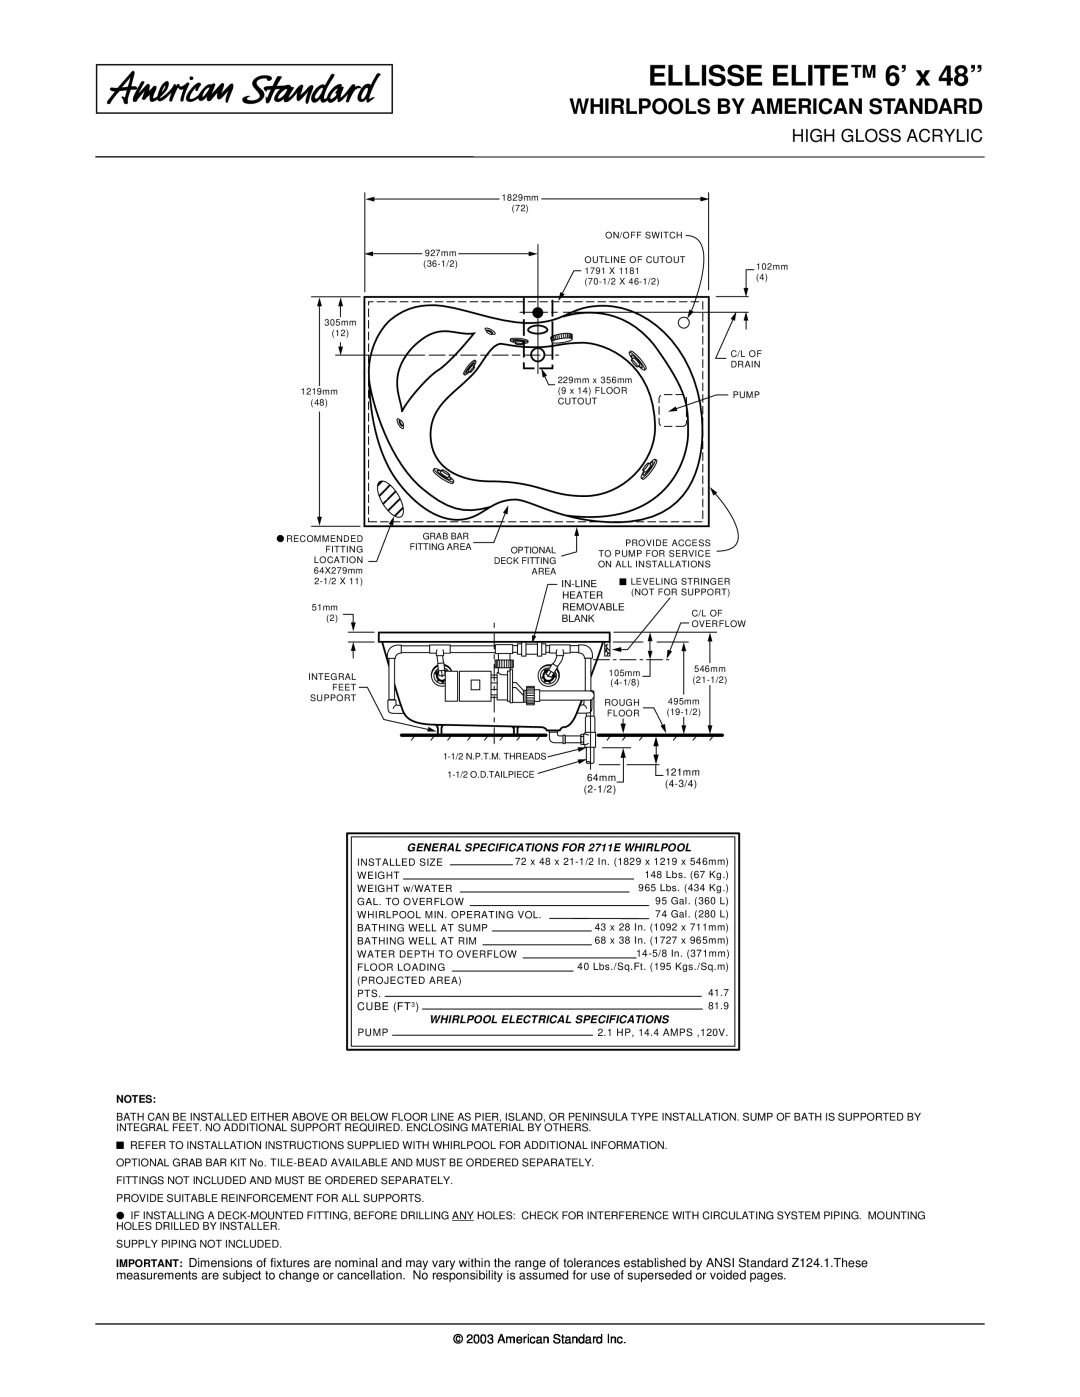 American Standard 2711EC dimensions ELLISSE ELITE 6’ x 48”, Whirlpools By American Standard, American Standard Inc 